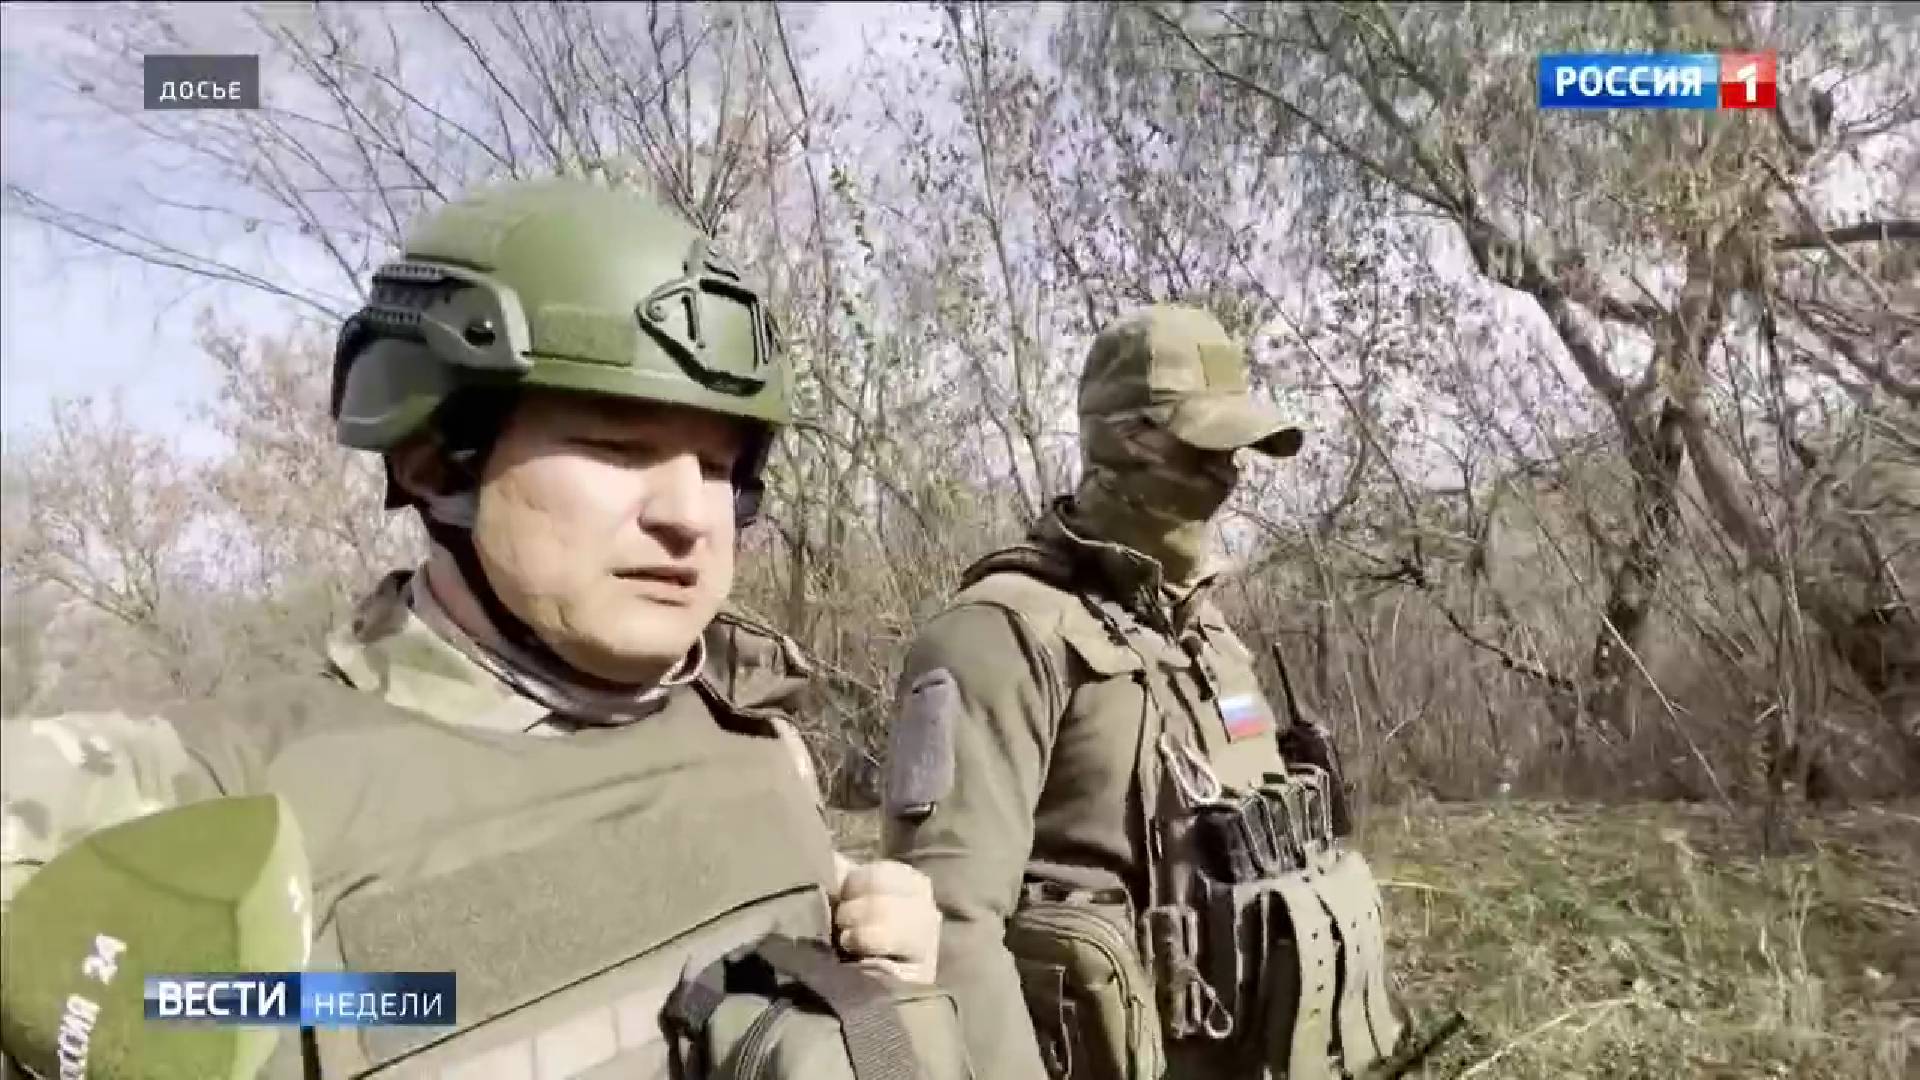 Dwaj mezczyźni w zielonych mundurach wojskowych